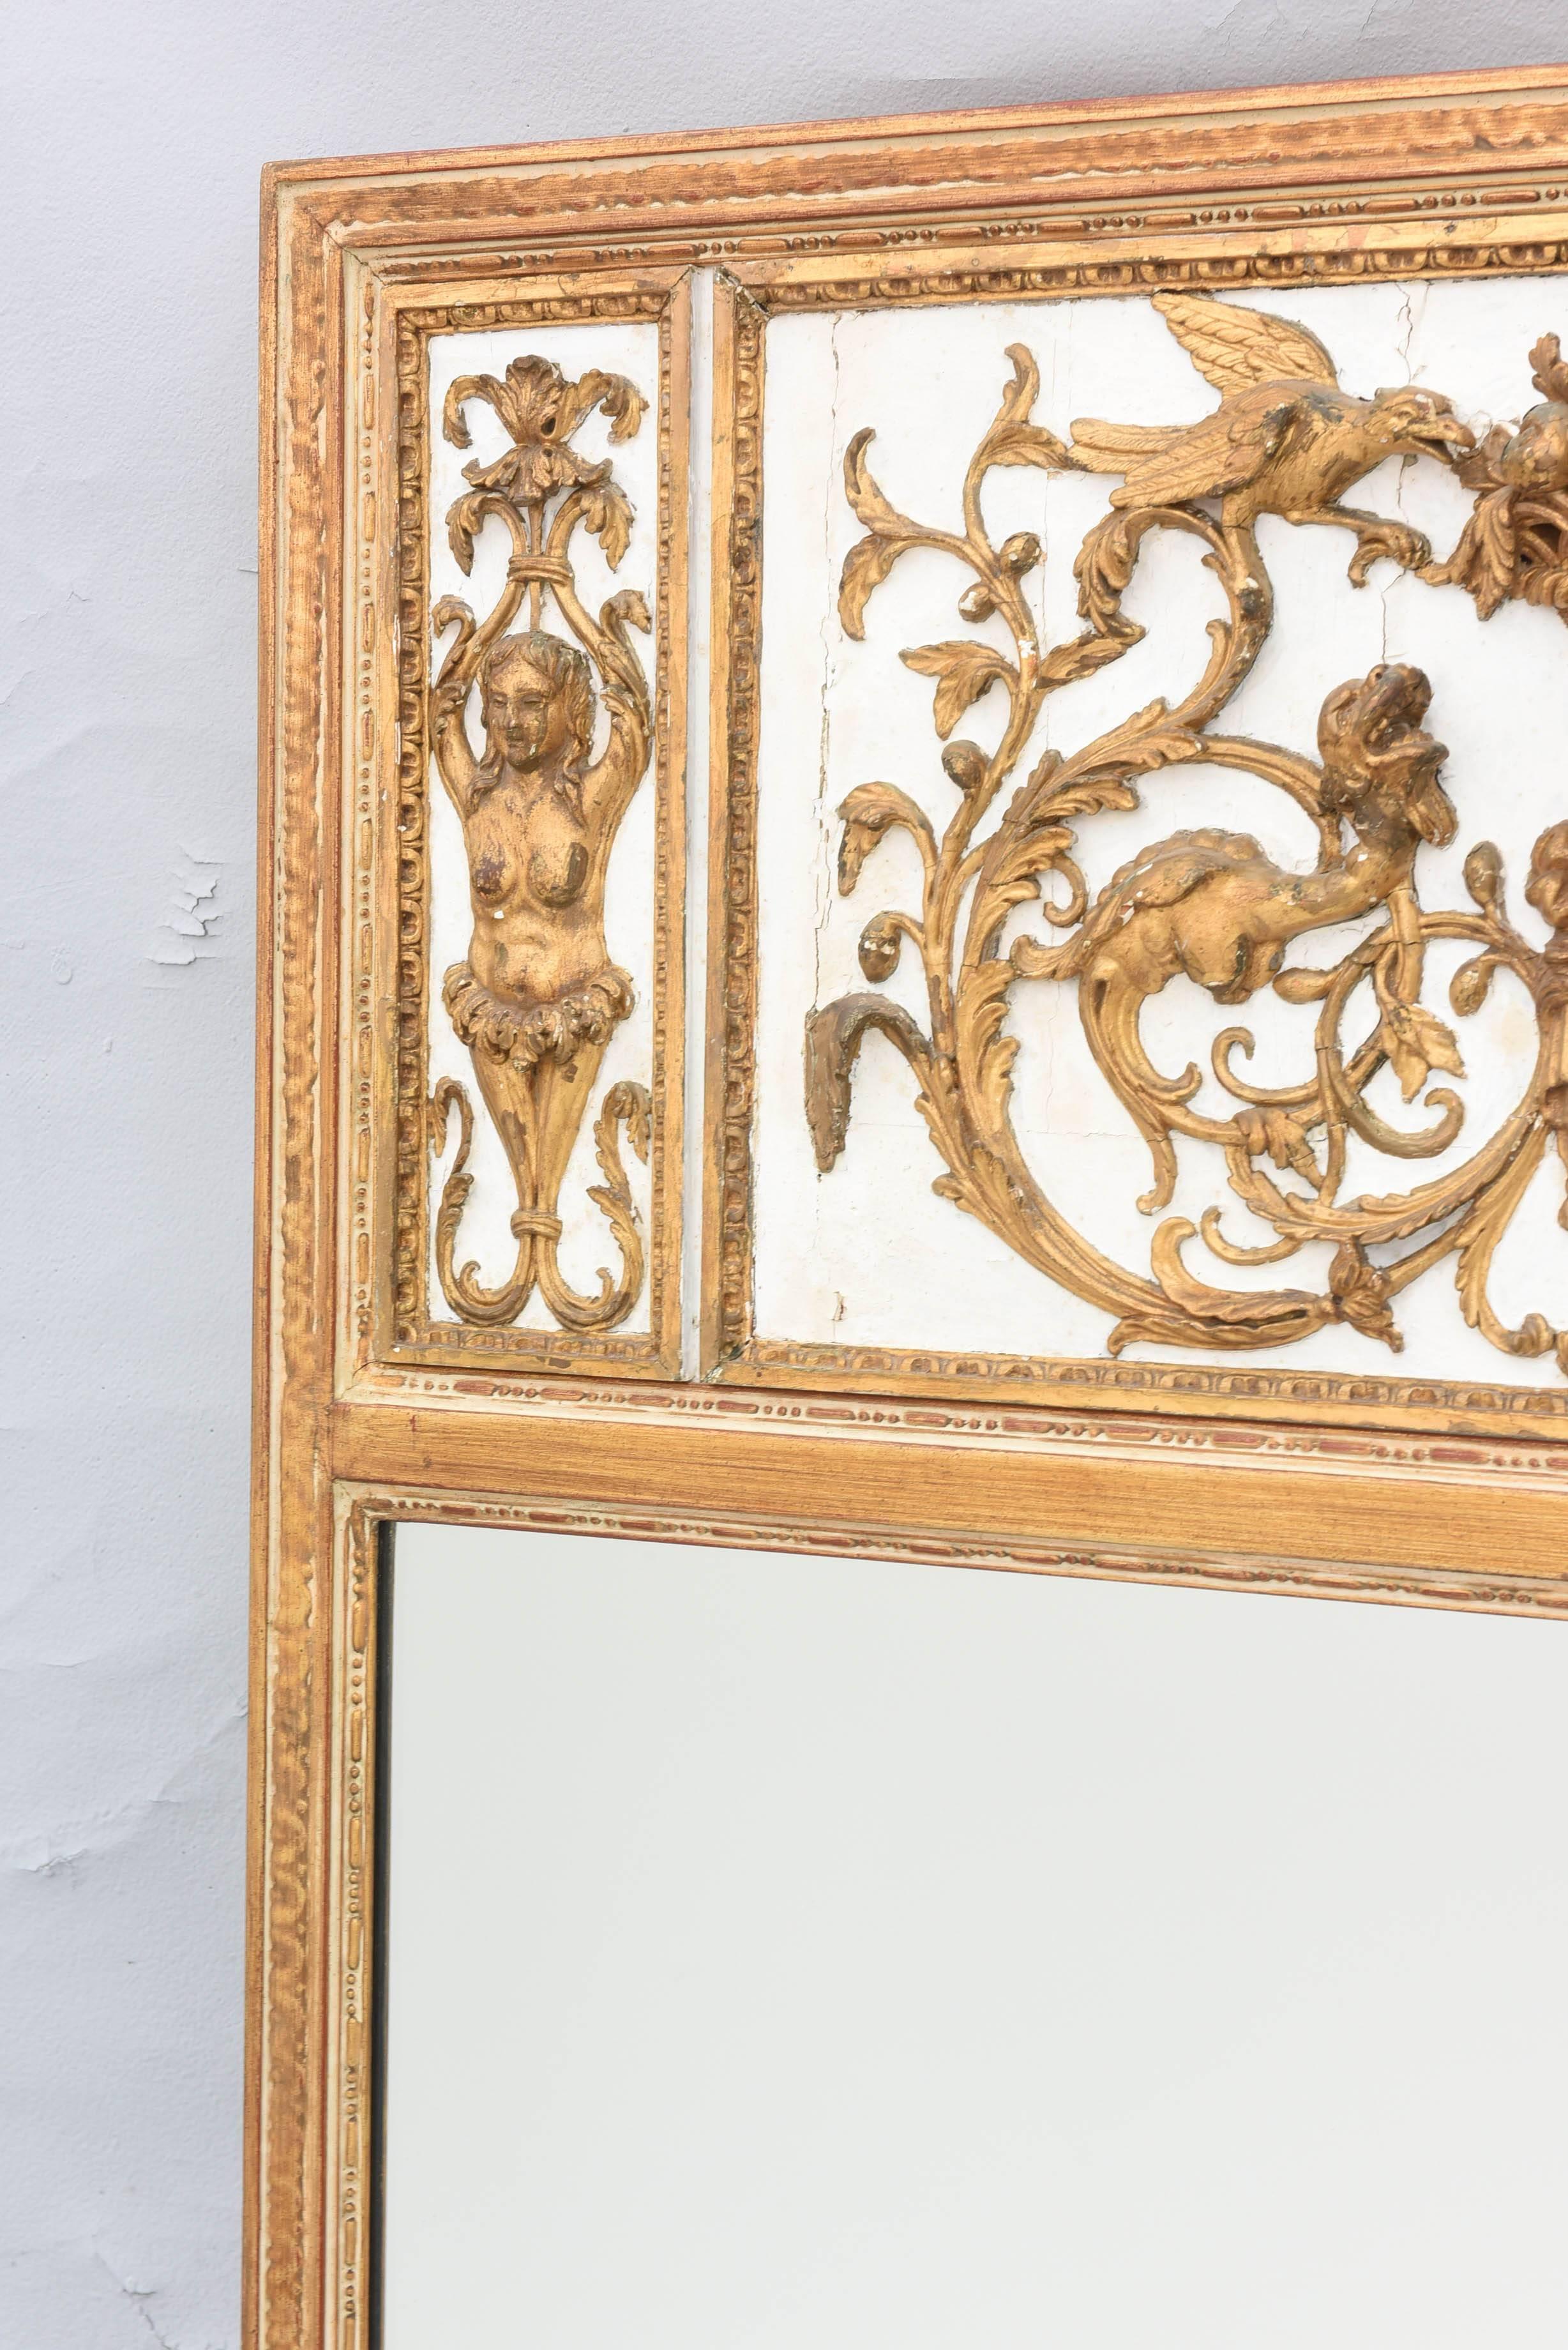 Trumeau-Spiegel, dessen rechteckiger Rahmen mit Schnitzereien und Wülsten verziert ist, überragt von einem Paneel aus dem 18. Jahrhundert, das mit aufwändigen, vergoldeten, klassischen Schnitzereien verziert ist; in der Mitte des Paneels ist eine